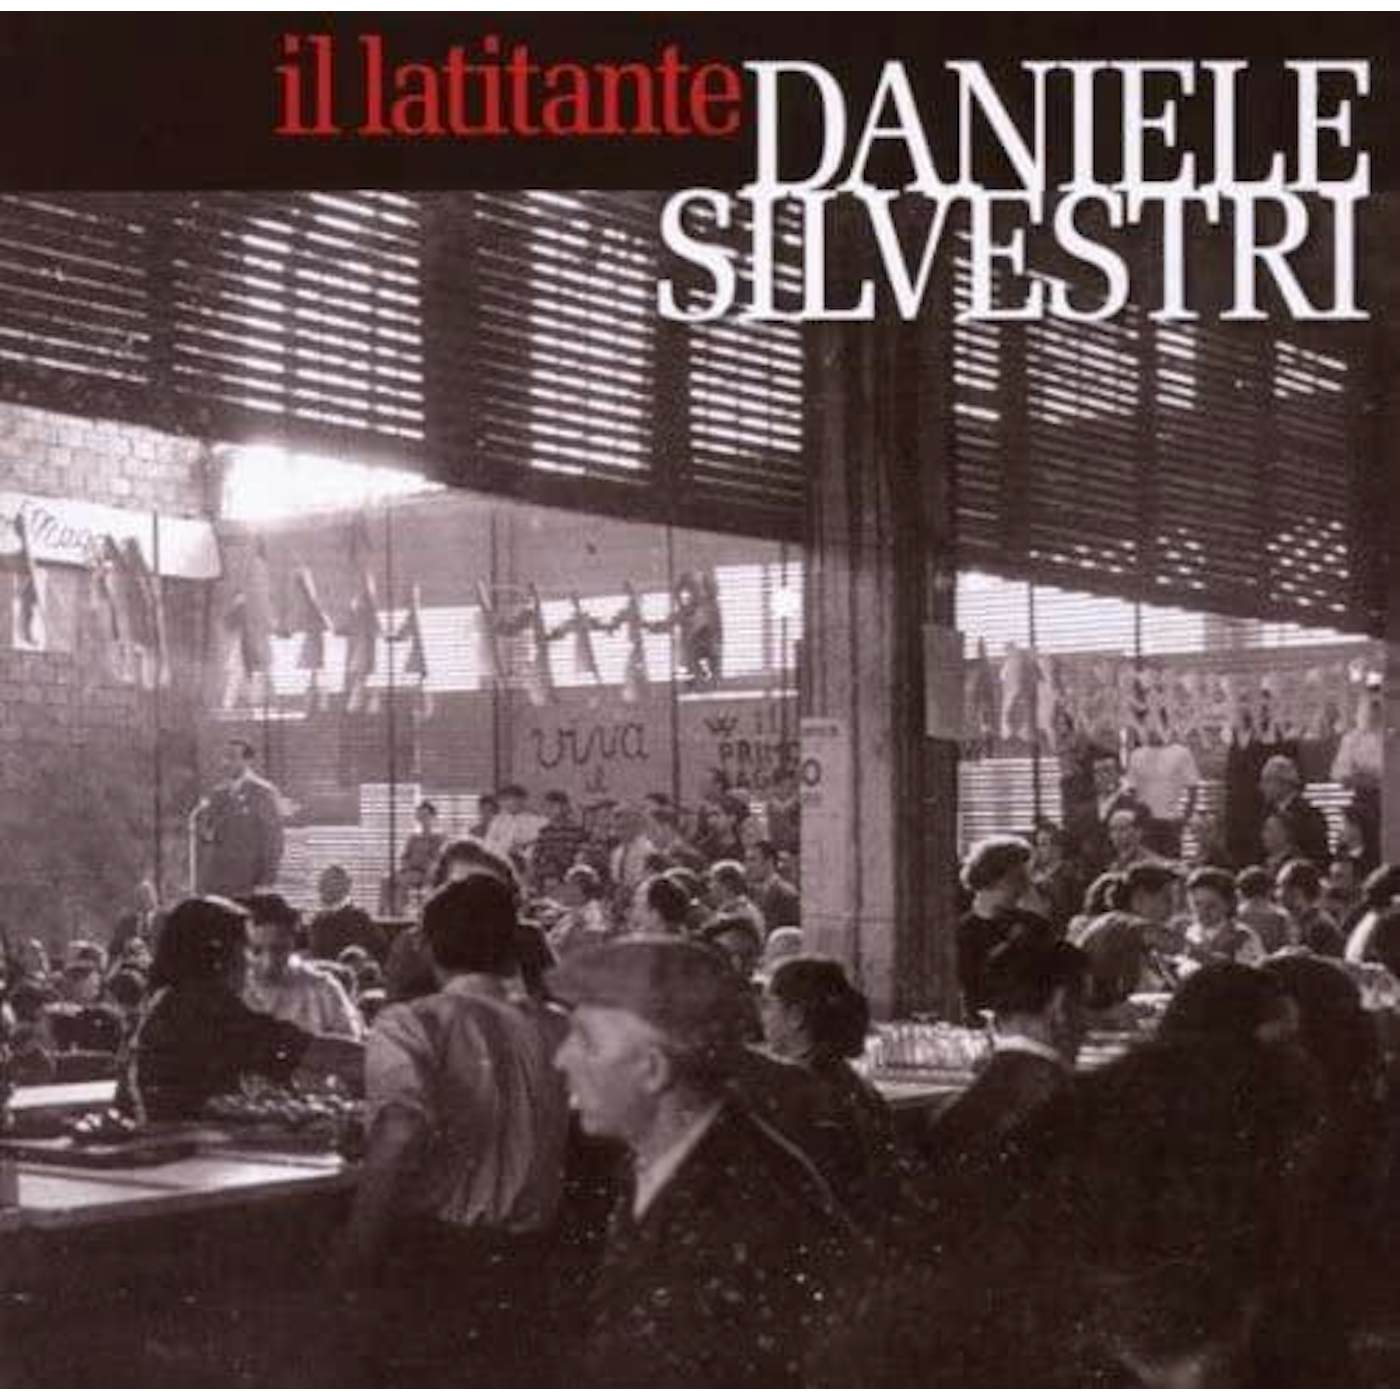 Daniele Silvestri Il Latitante Vinyl Record